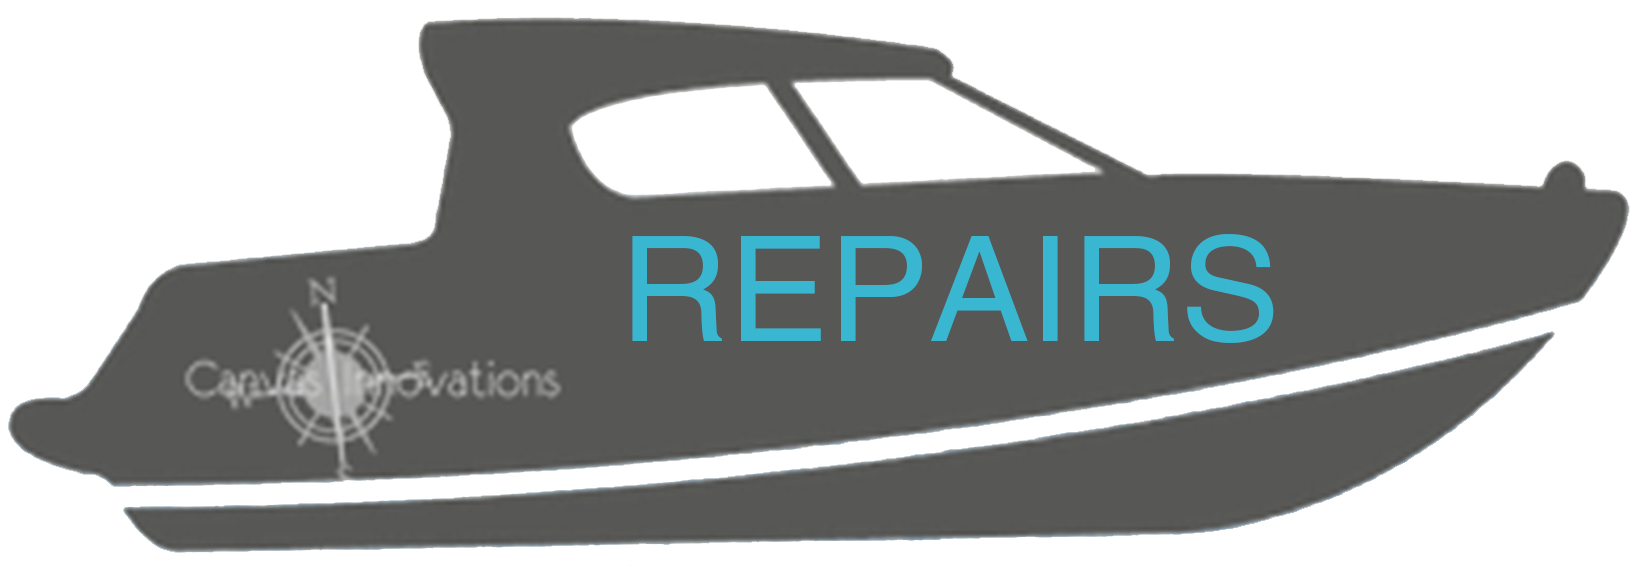 Repairs Image